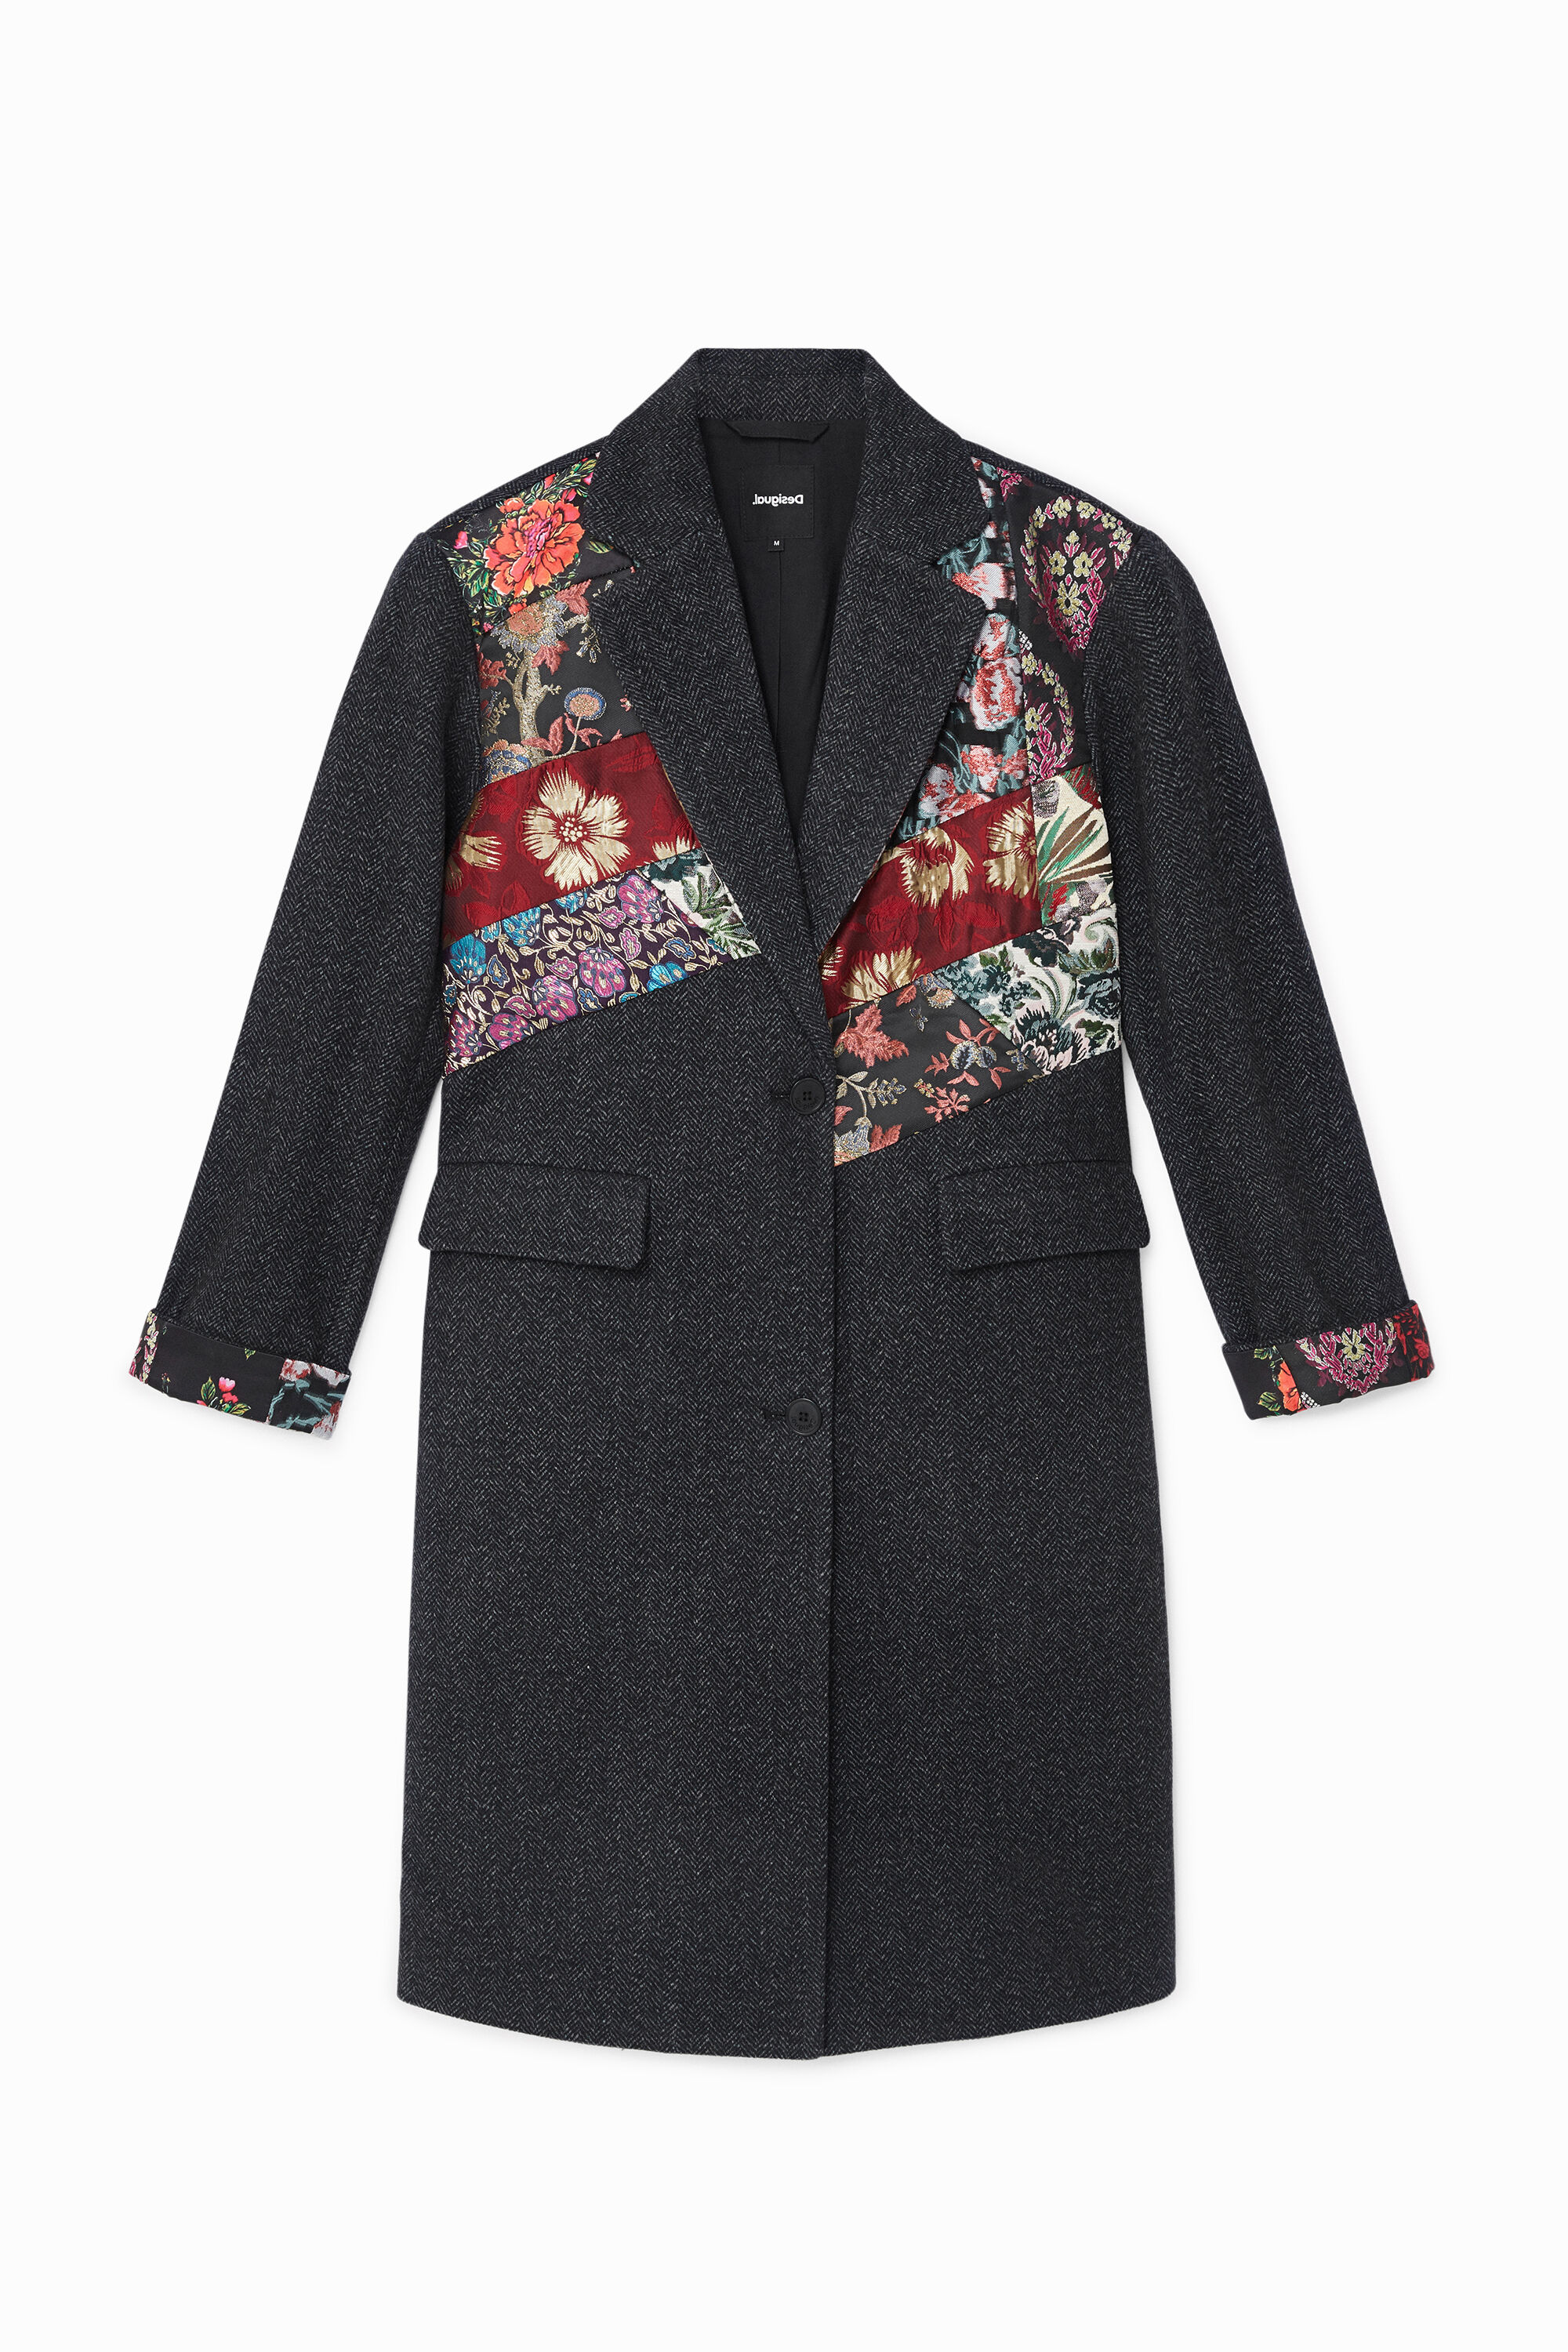 Loose cloth floral patch coat - BLACK - M